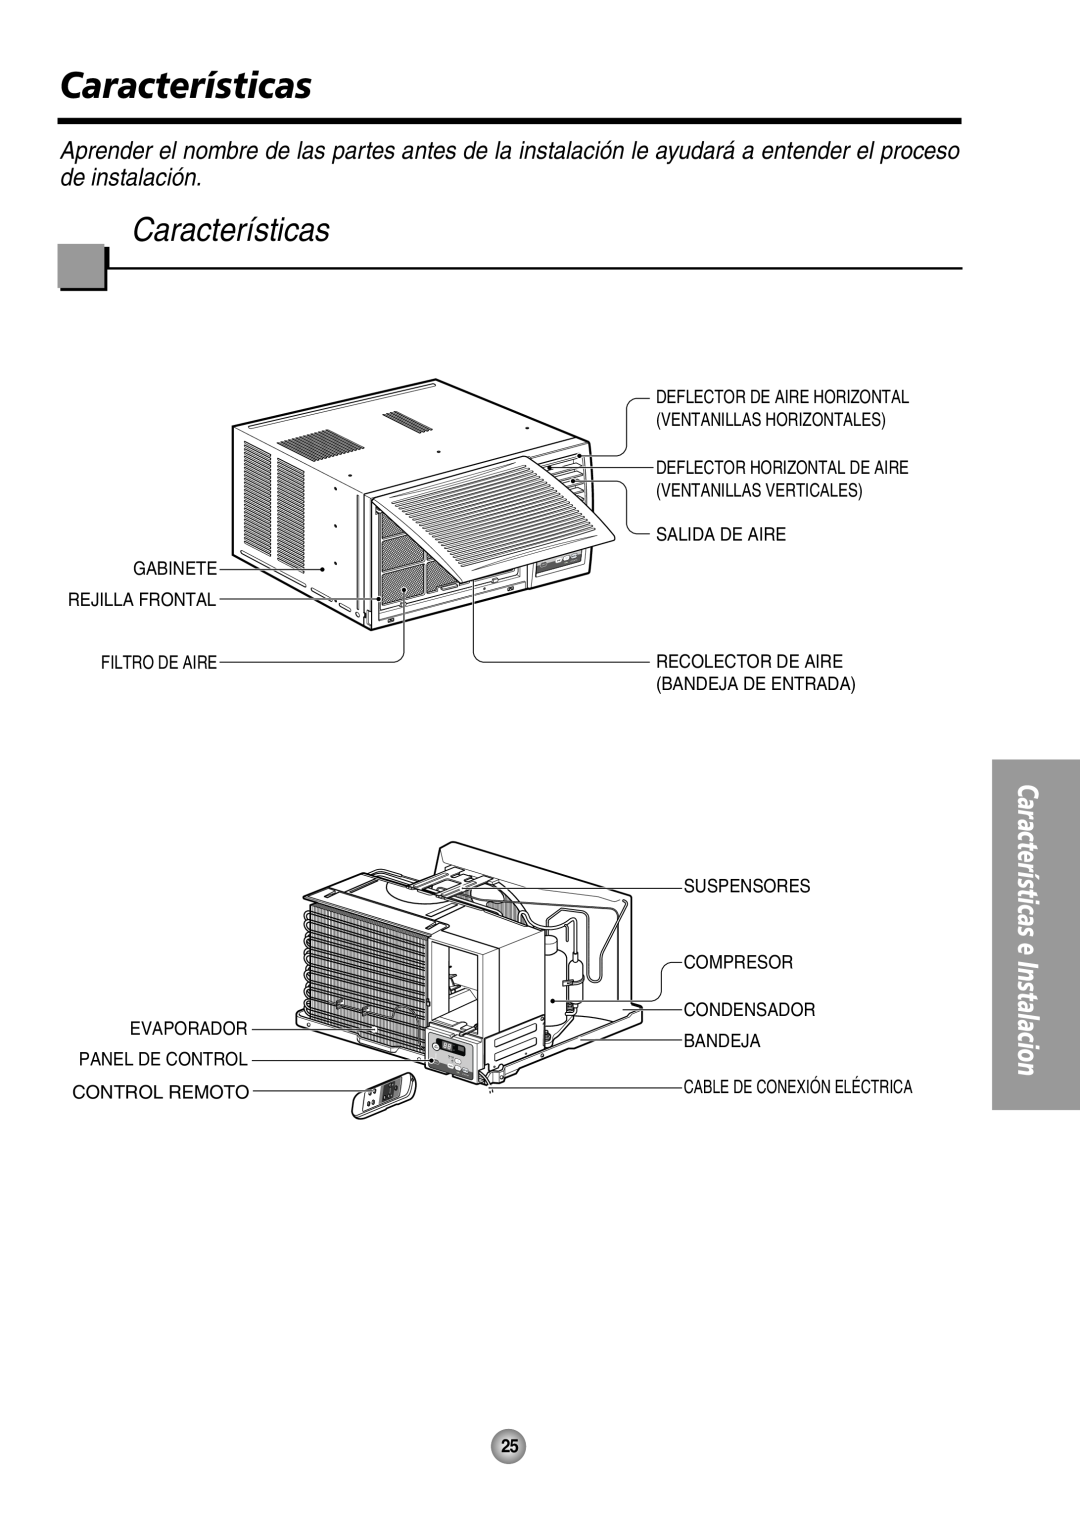 Panasonic CW-XC80HU Características e, Instalacion, Ventanillas Verticales, Salida De Aire, Filtro De Aire, Compresor 